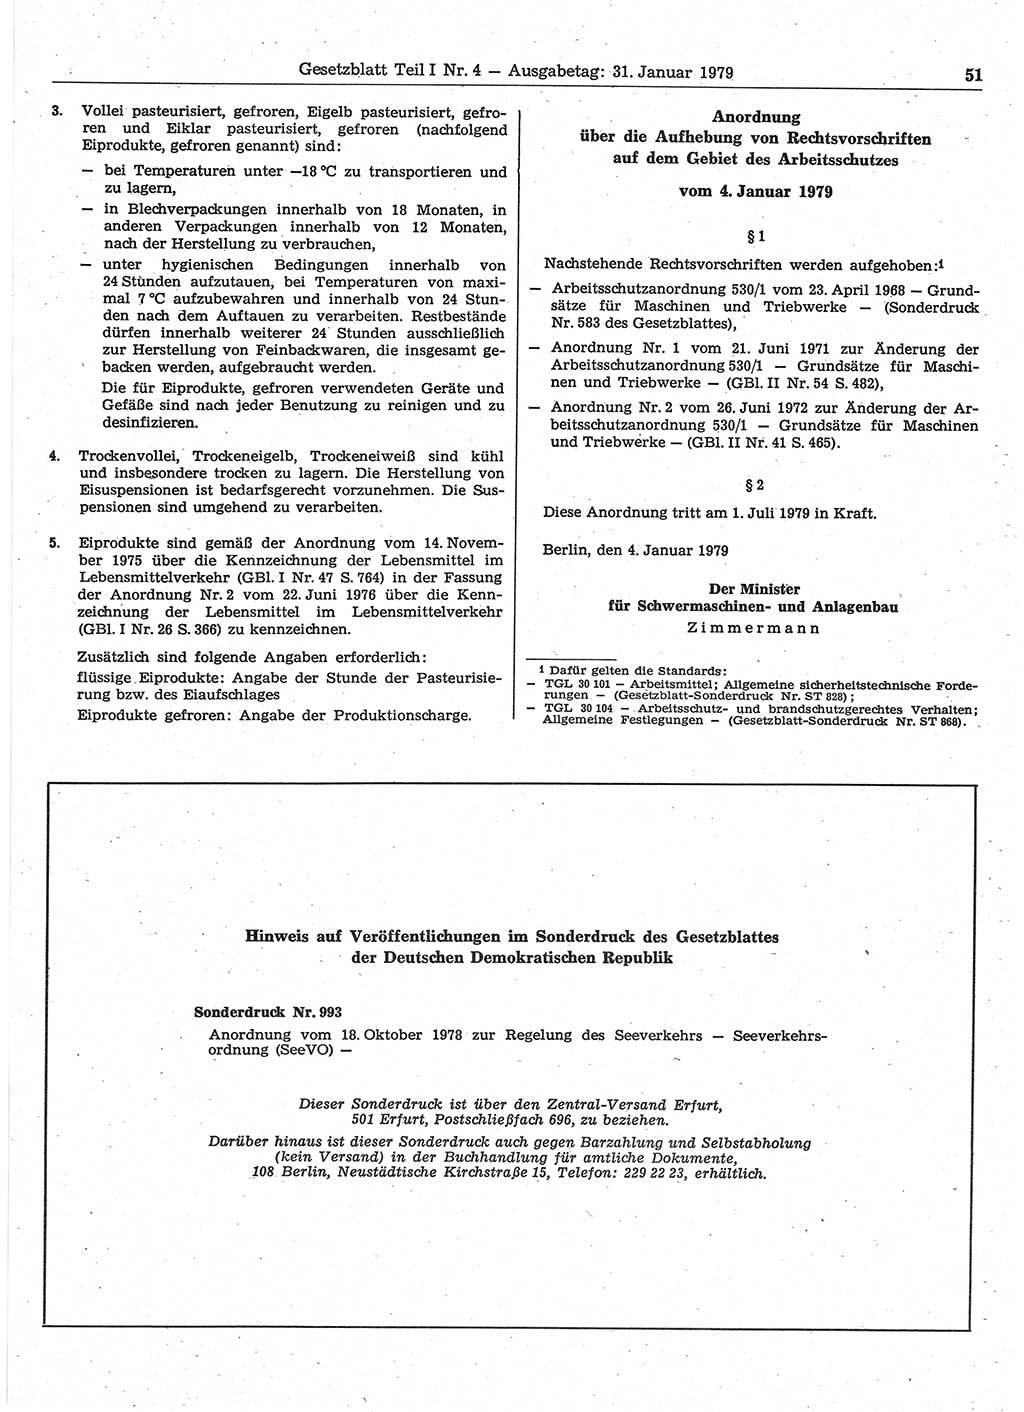 Gesetzblatt (GBl.) der Deutschen Demokratischen Republik (DDR) Teil Ⅰ 1979, Seite 51 (GBl. DDR Ⅰ 1979, S. 51)